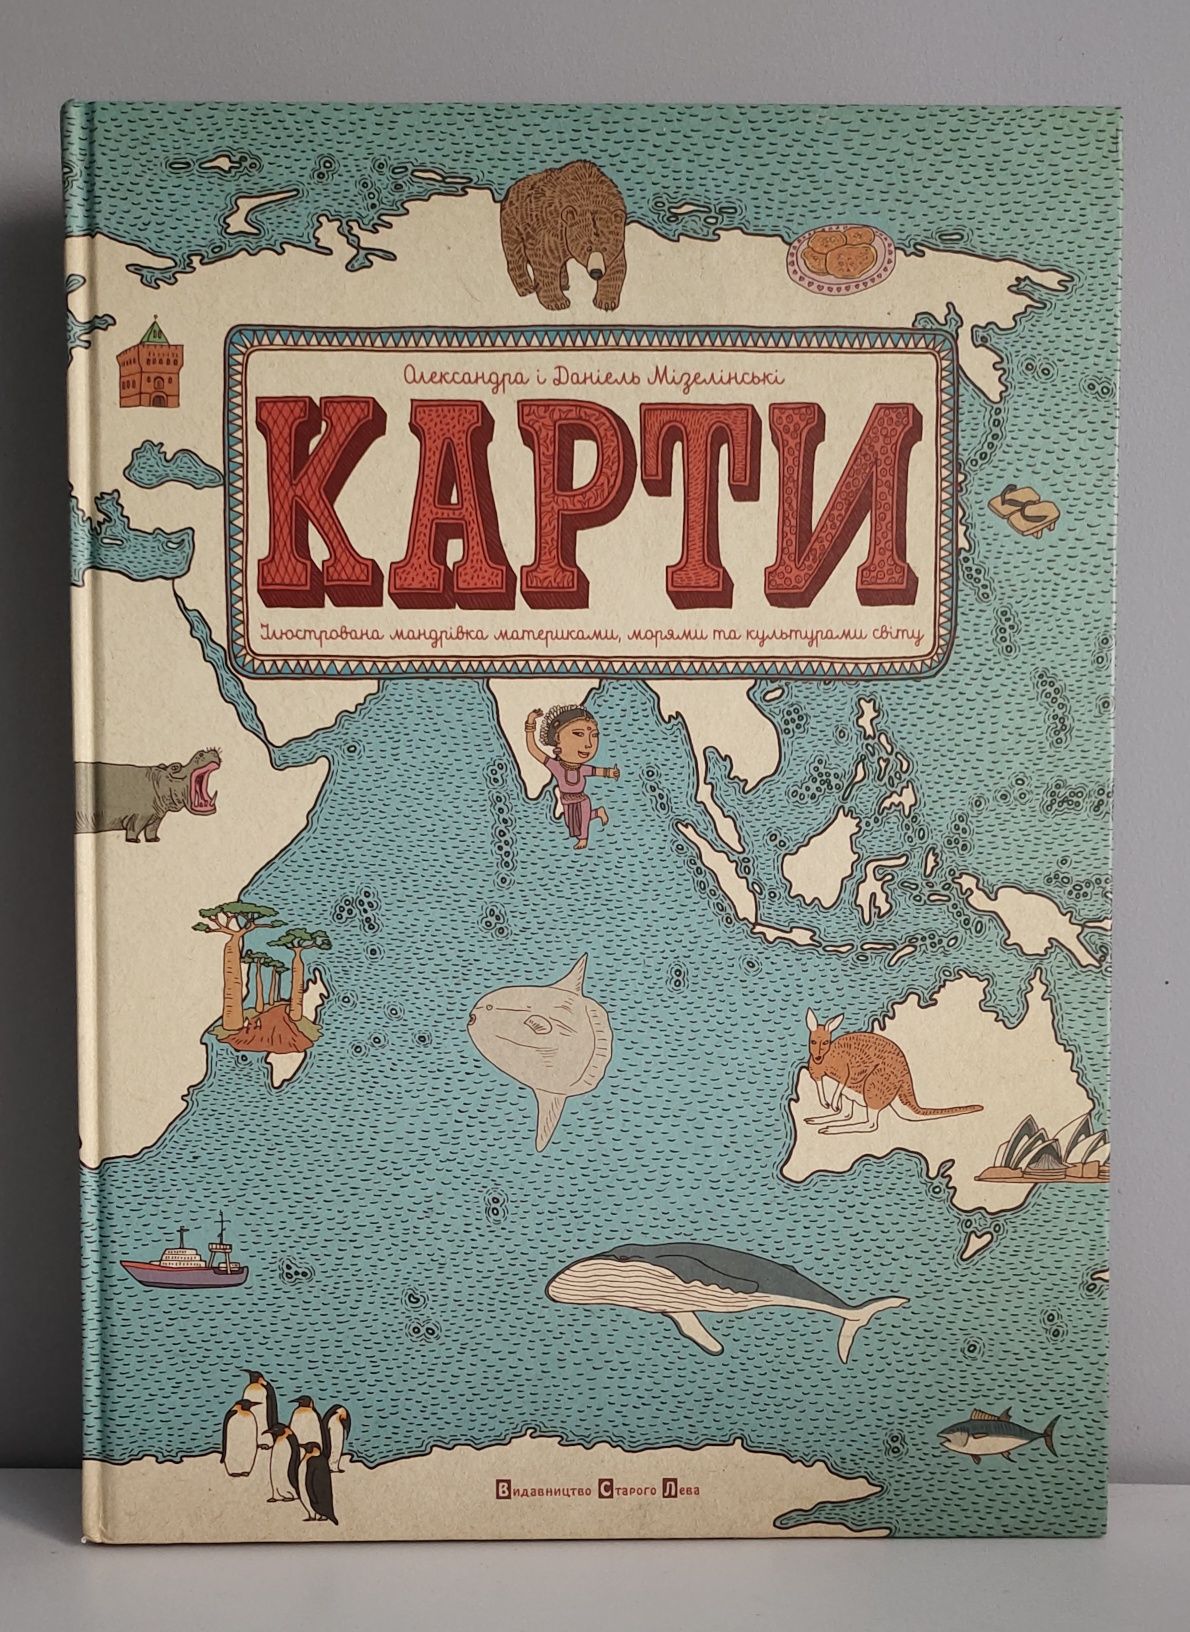 Книга "Карти. Ілюстрована мандрівка материками, морями та культурами"